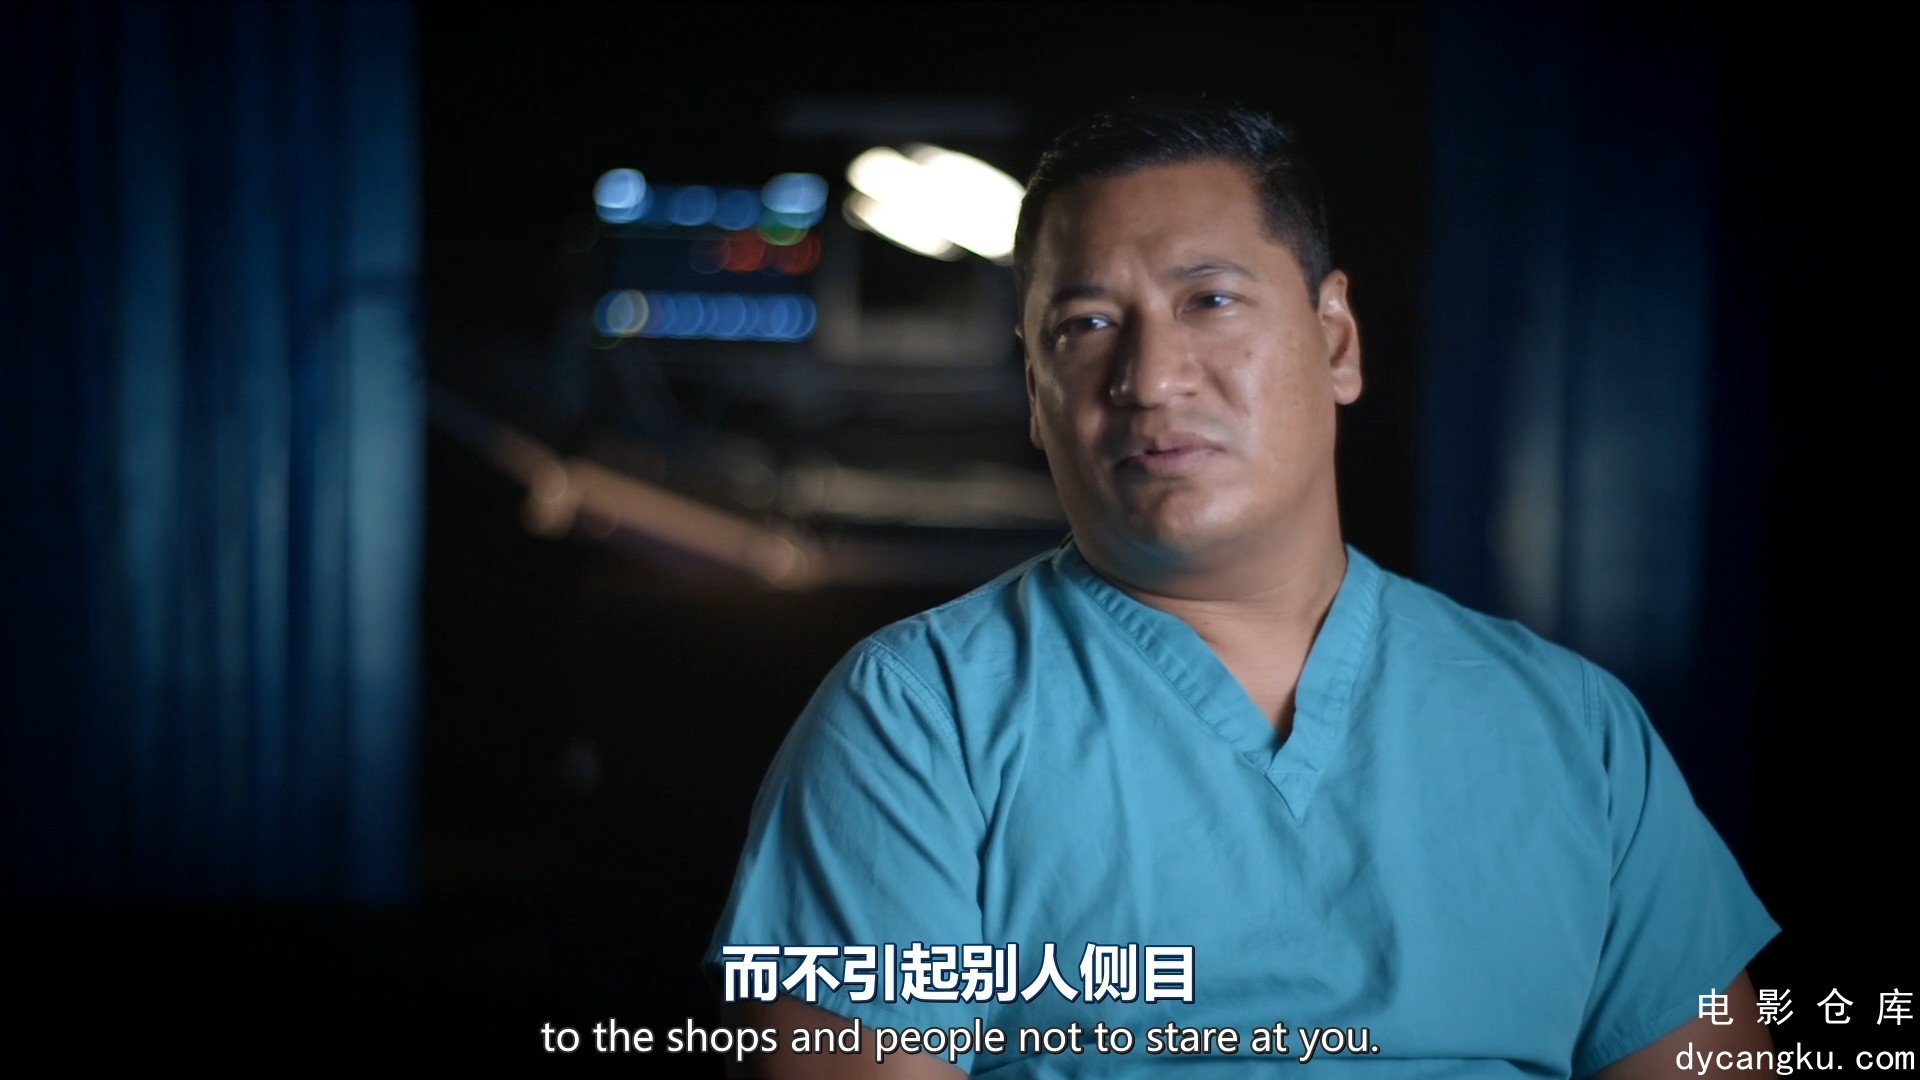 [电影仓库dycangku.com]手术室的故事Surgeons.At.the.Edge.of.Life.S04E01.1080p.mp4_.jpg